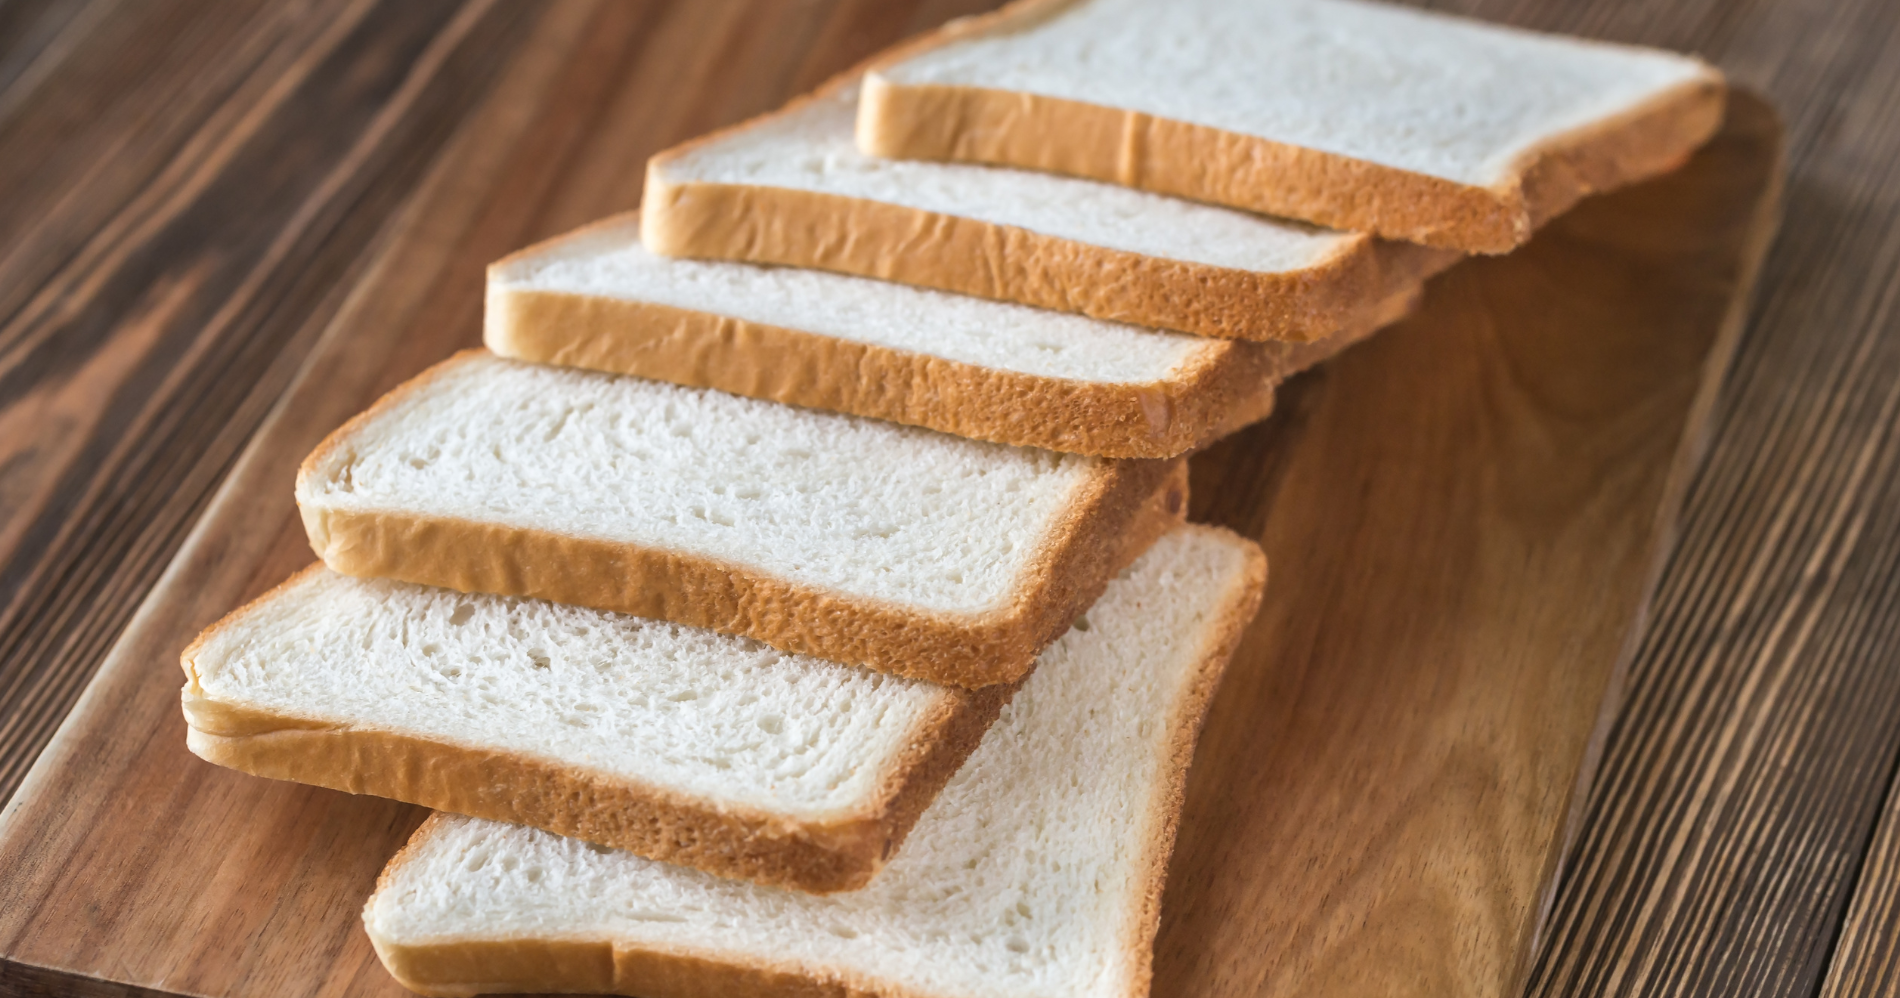 Roti putih termasuk karbohidrat olahan./Canva